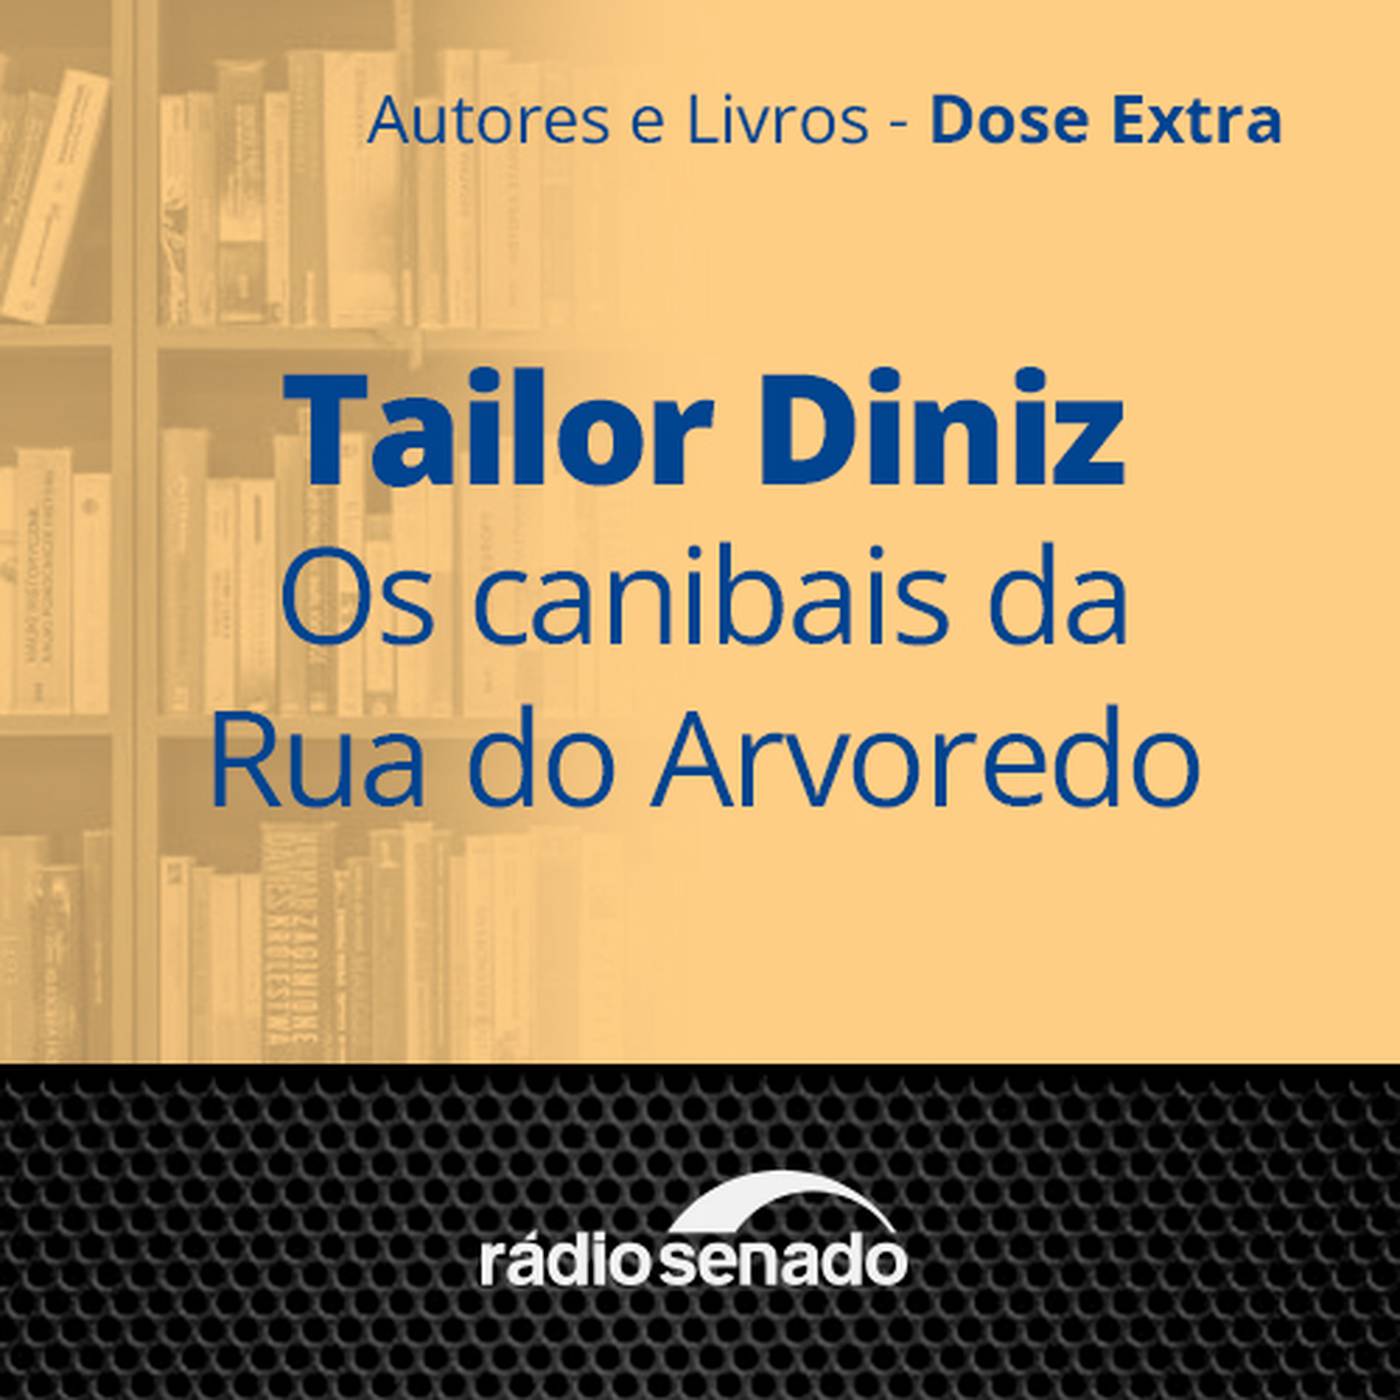 Tailor Diniz - Os canibais da Rua do Arvoredo - 1ª parte